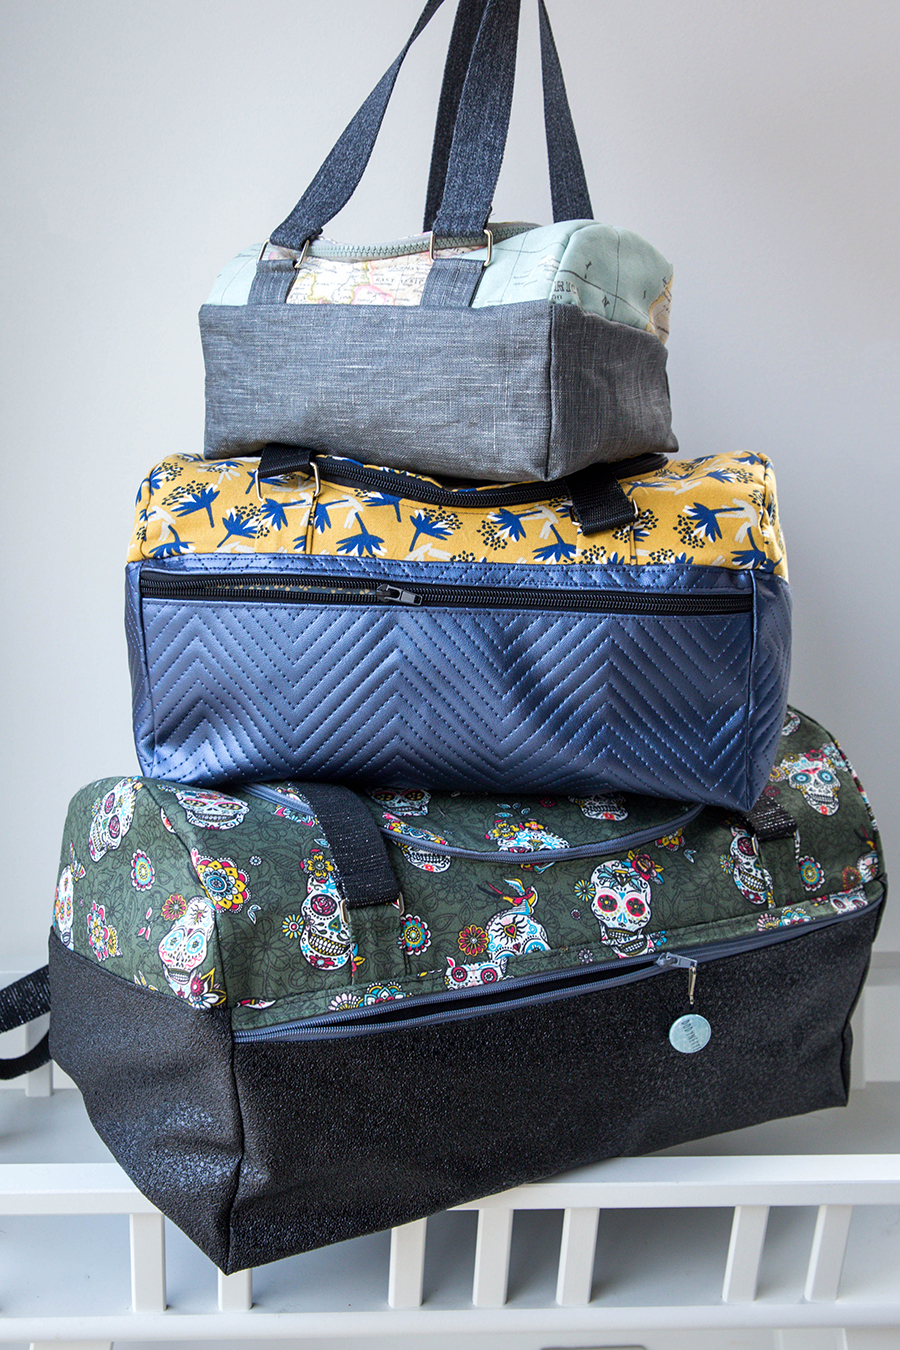 Le kit de couture sac Hugo (tailles 1 et 2) - petits perroquets gris  pétales dans des tons ocre /fond de sac épais chiné vintage ocre - Dodynette